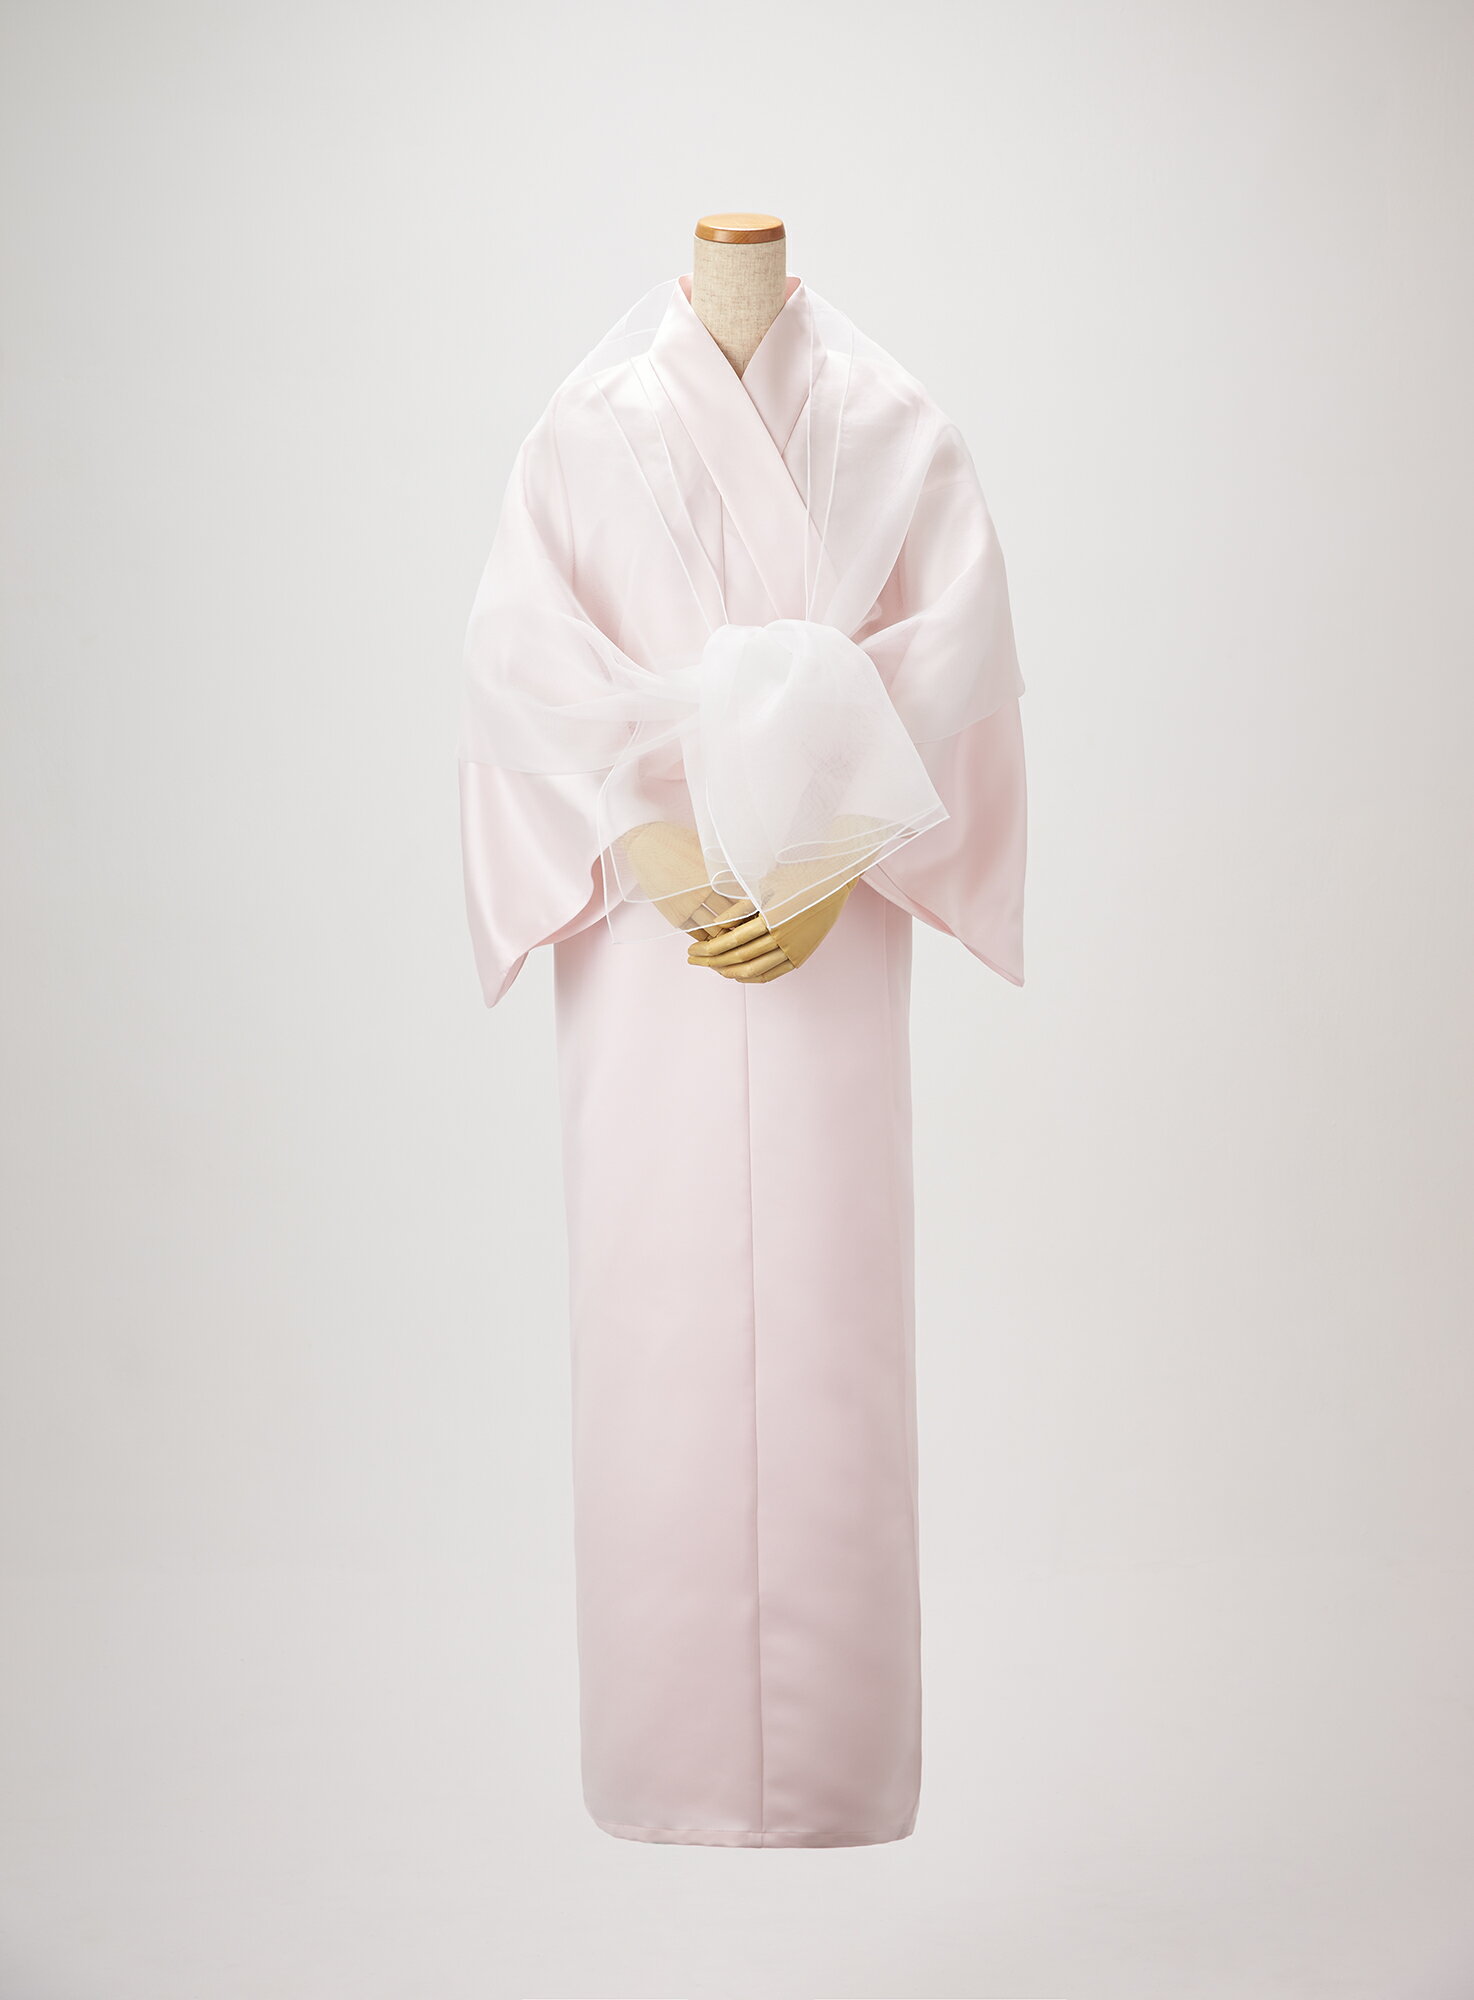 羽衣 死装束 エンディングドレス 終活準備 葬儀服 シニアファッション 婦人 着物 ピンク 日本製 送料無料